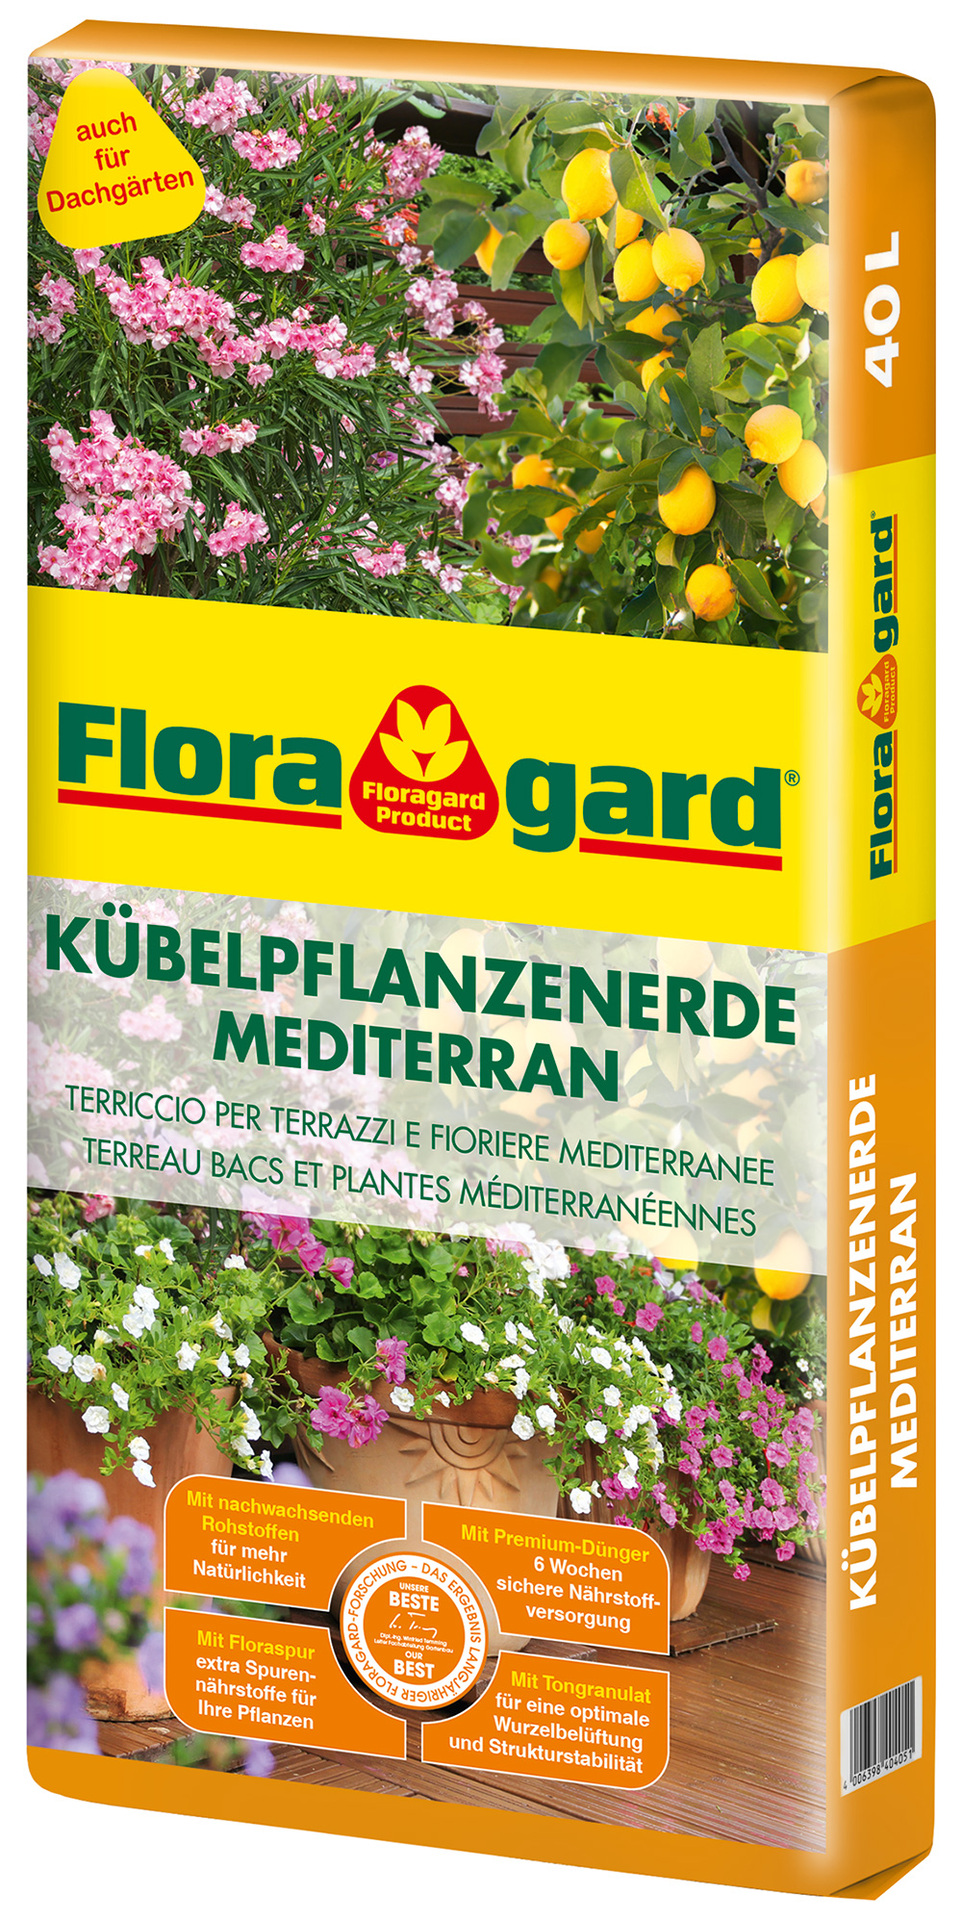 Floragard Vertriebs GmbH Kübelpflanzenerde mediteran 40L